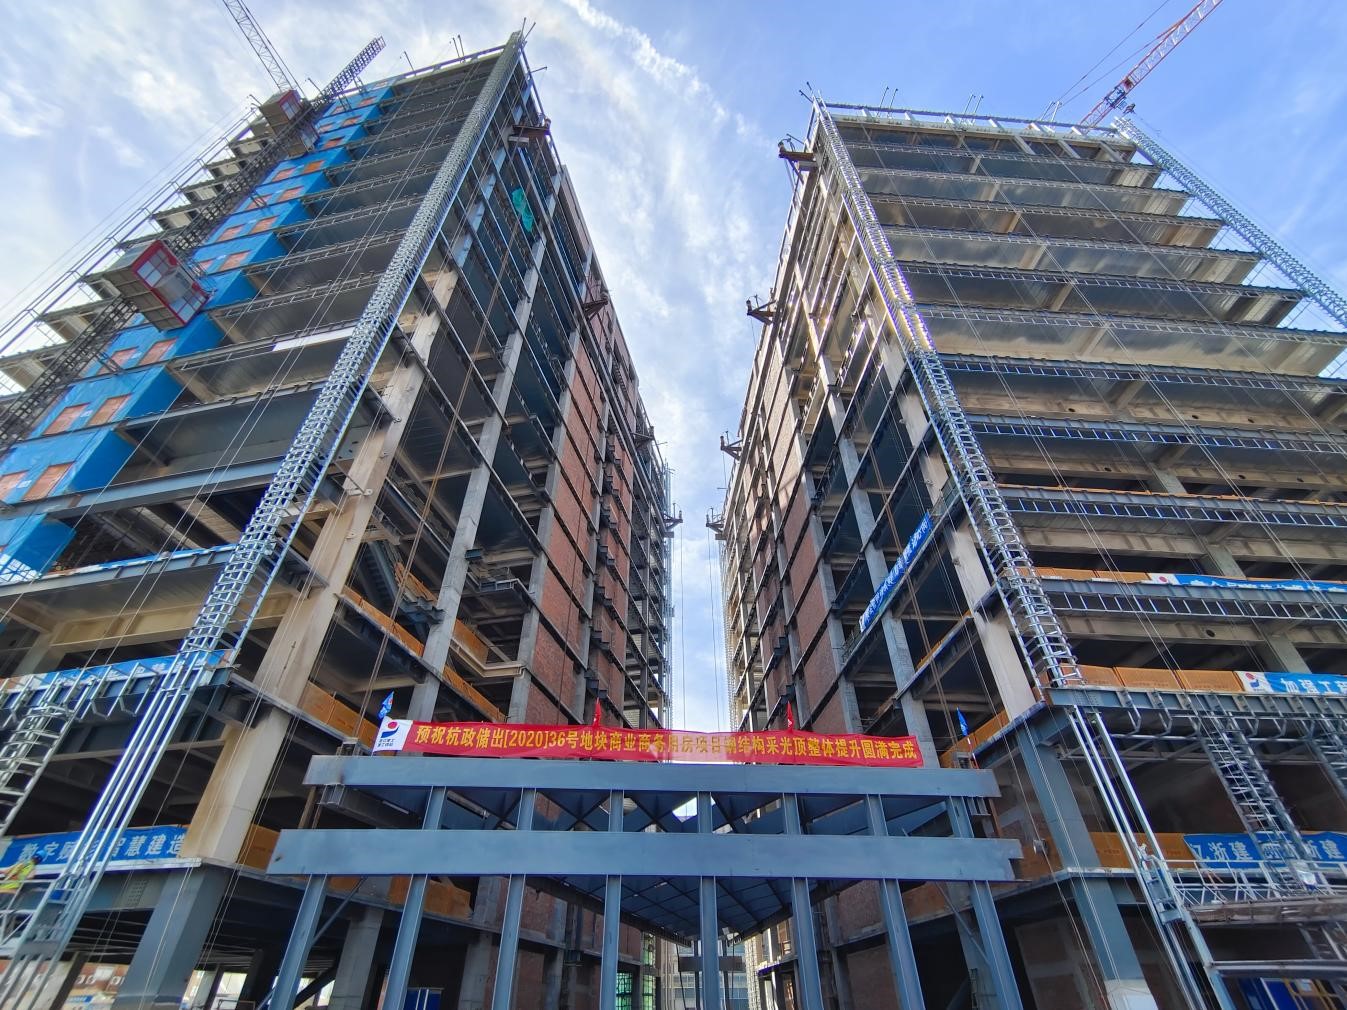 公司监理的杭政储出（2020）36号 地块商业商务用房项目钢结构采光顶及连体 桁架整体提升工程圆满成功